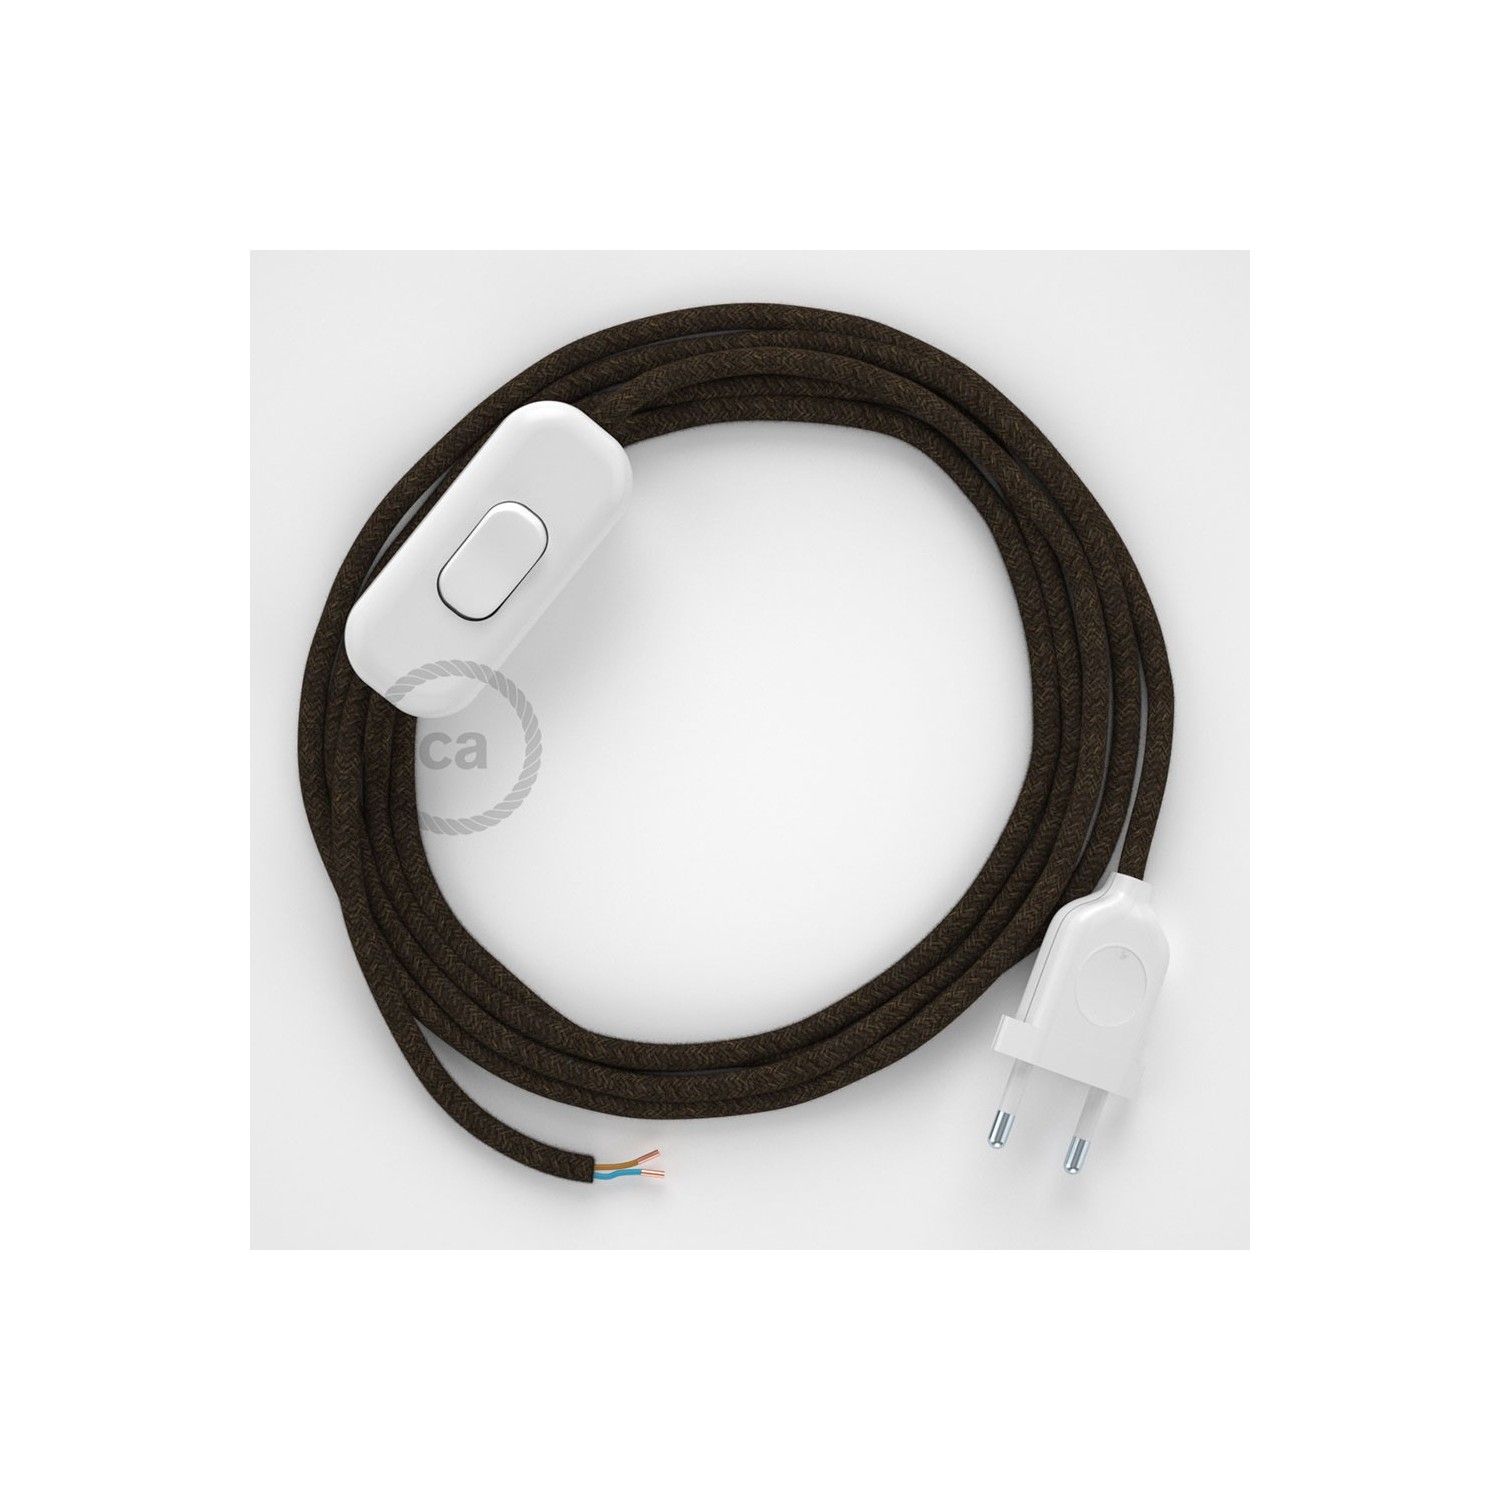 Cableado para lámpara, cable RN04 Lino Natural Marrón 1,8m. Elige tu el color de la clavija y del interruptor!